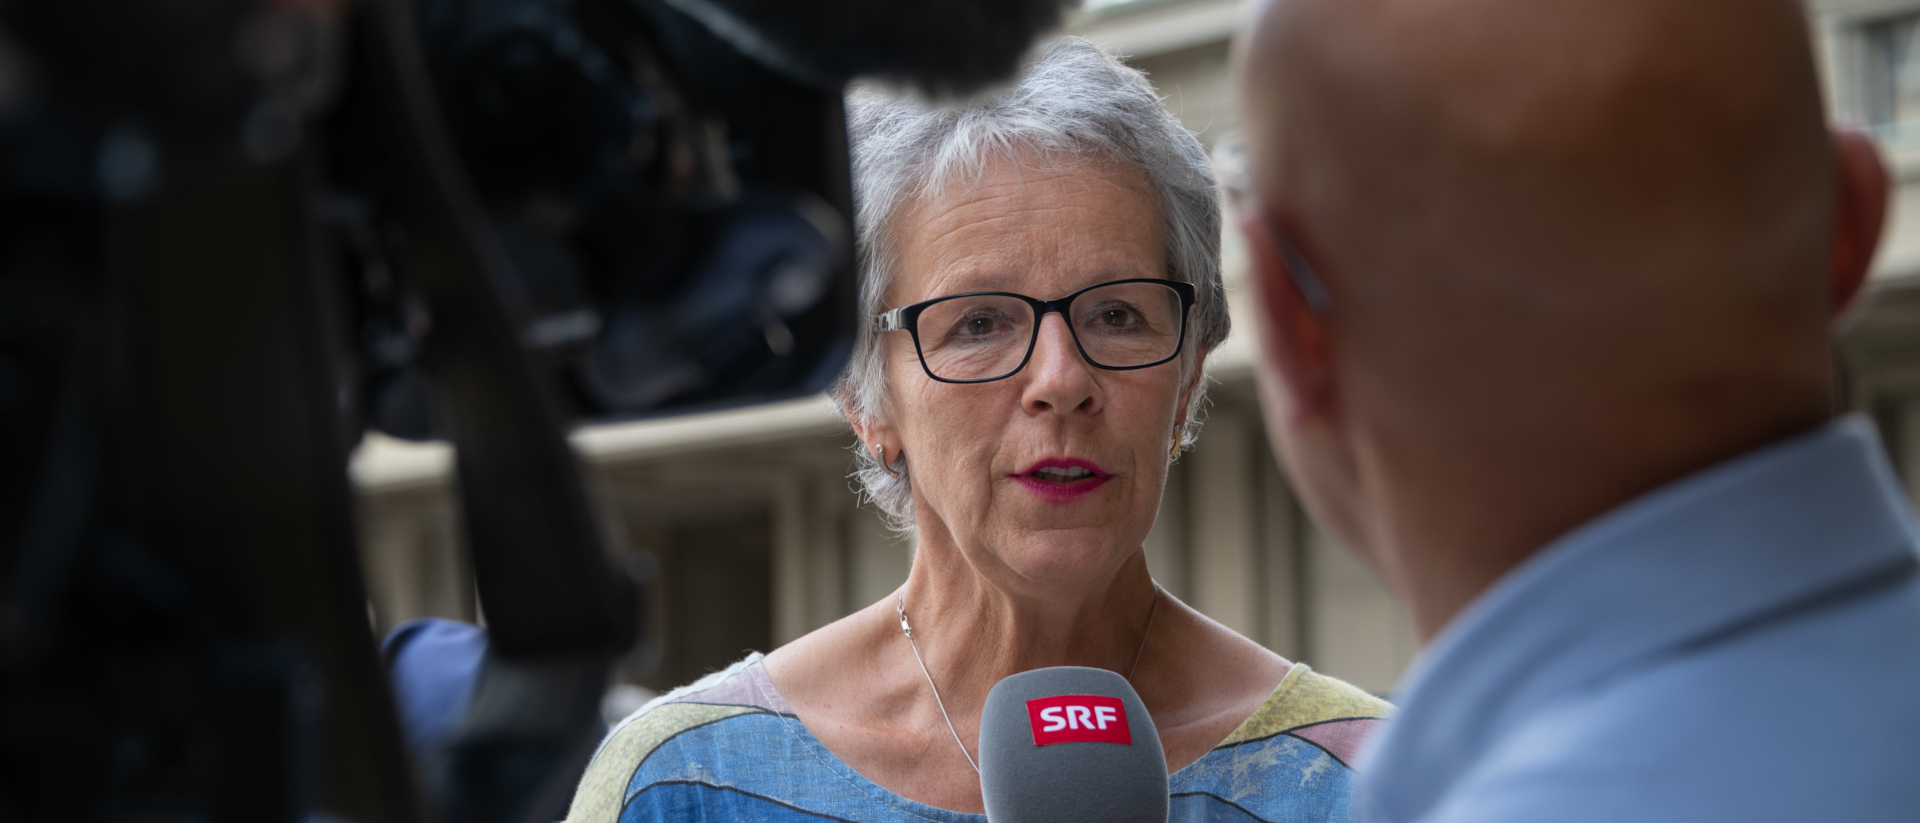 Simone Curau-Aepli ist Präsidentin des Schweizerischen Katholischen Frauenbunds